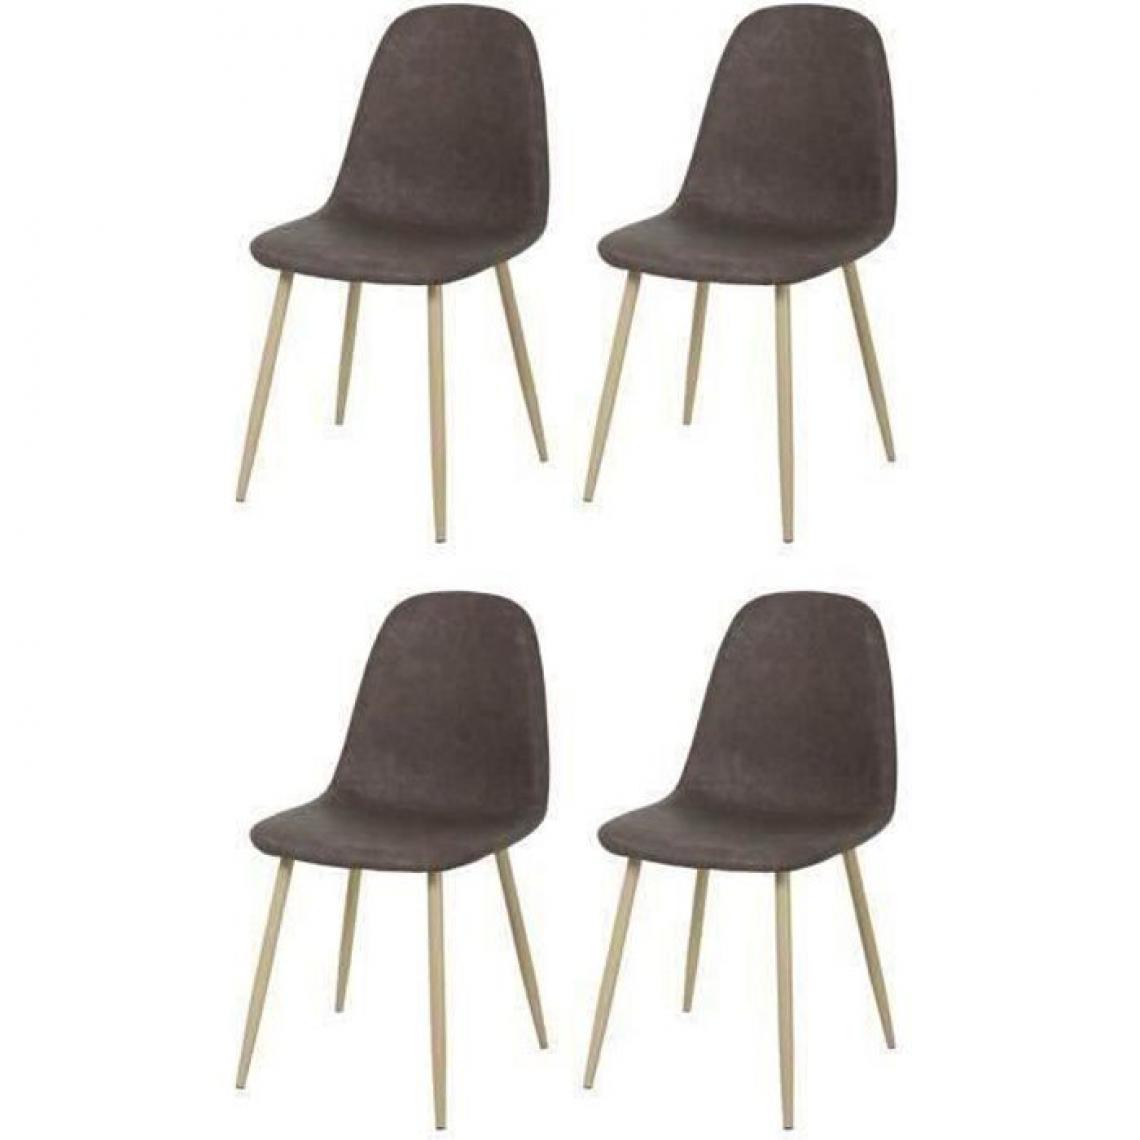 Cstore - CLODY - lot de 4 chaises simili vintage marron l 45xp 53xh 85 cm - Chaises de jardin